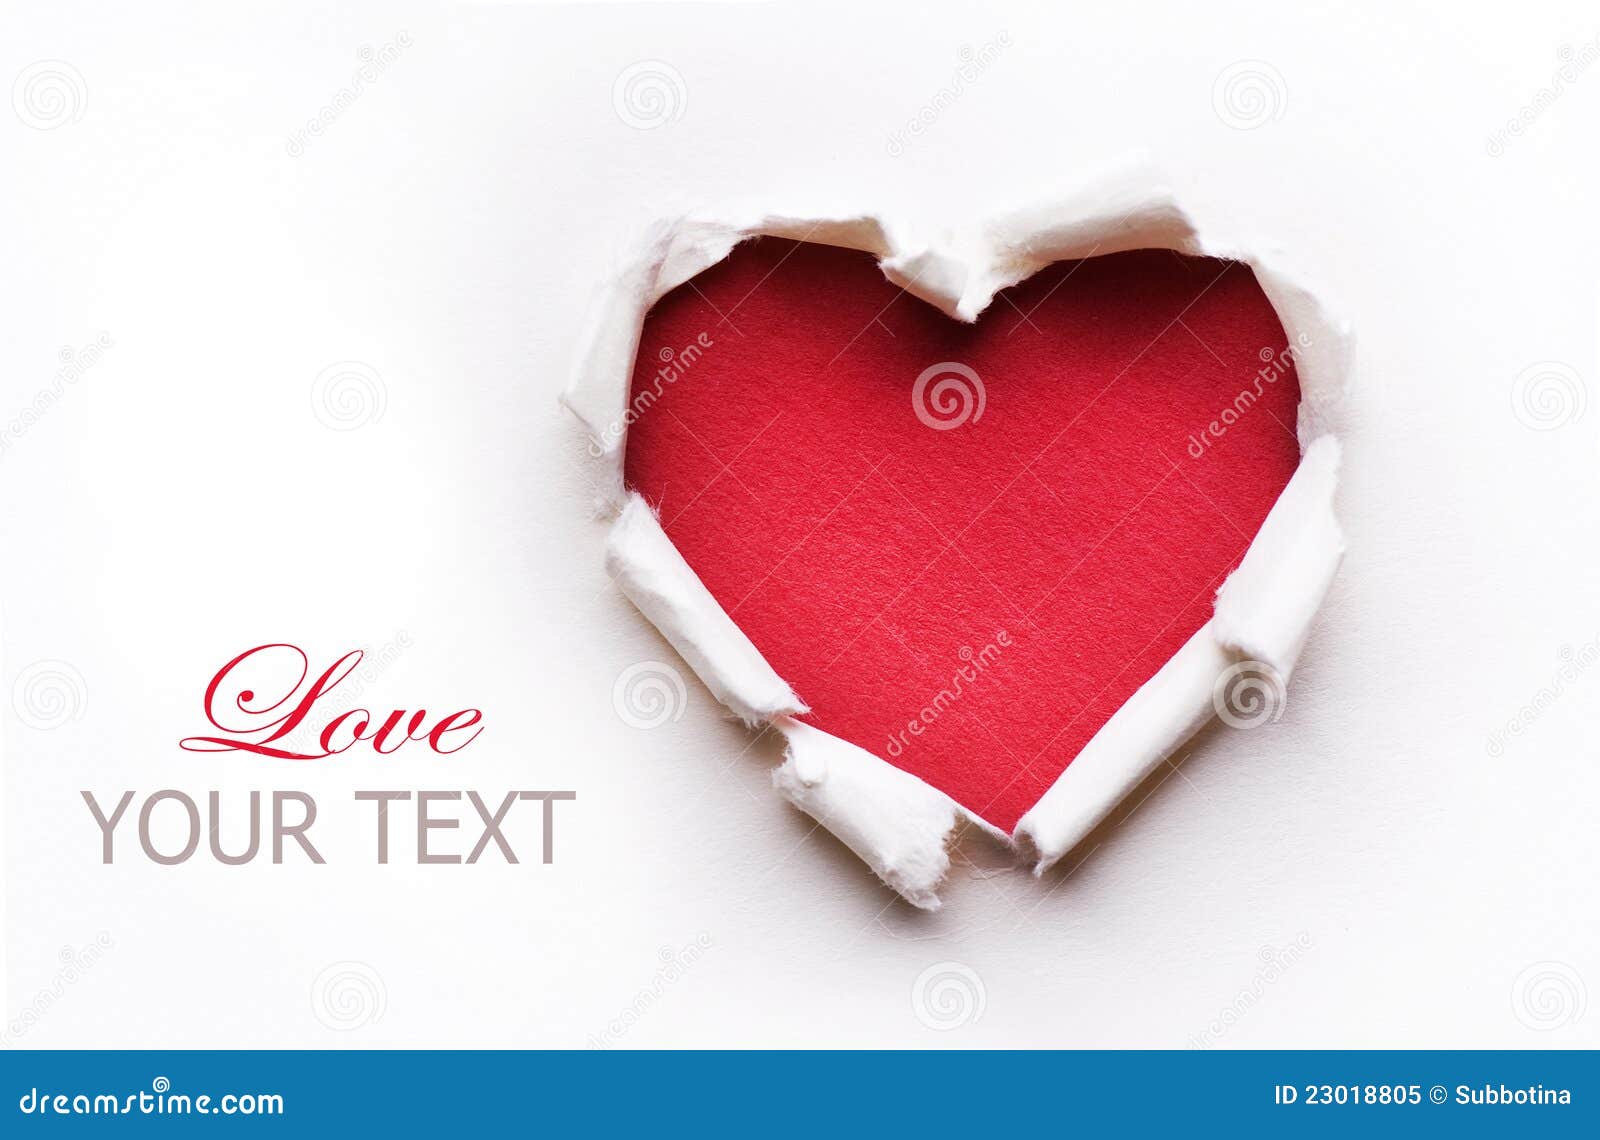 valentine heart card 